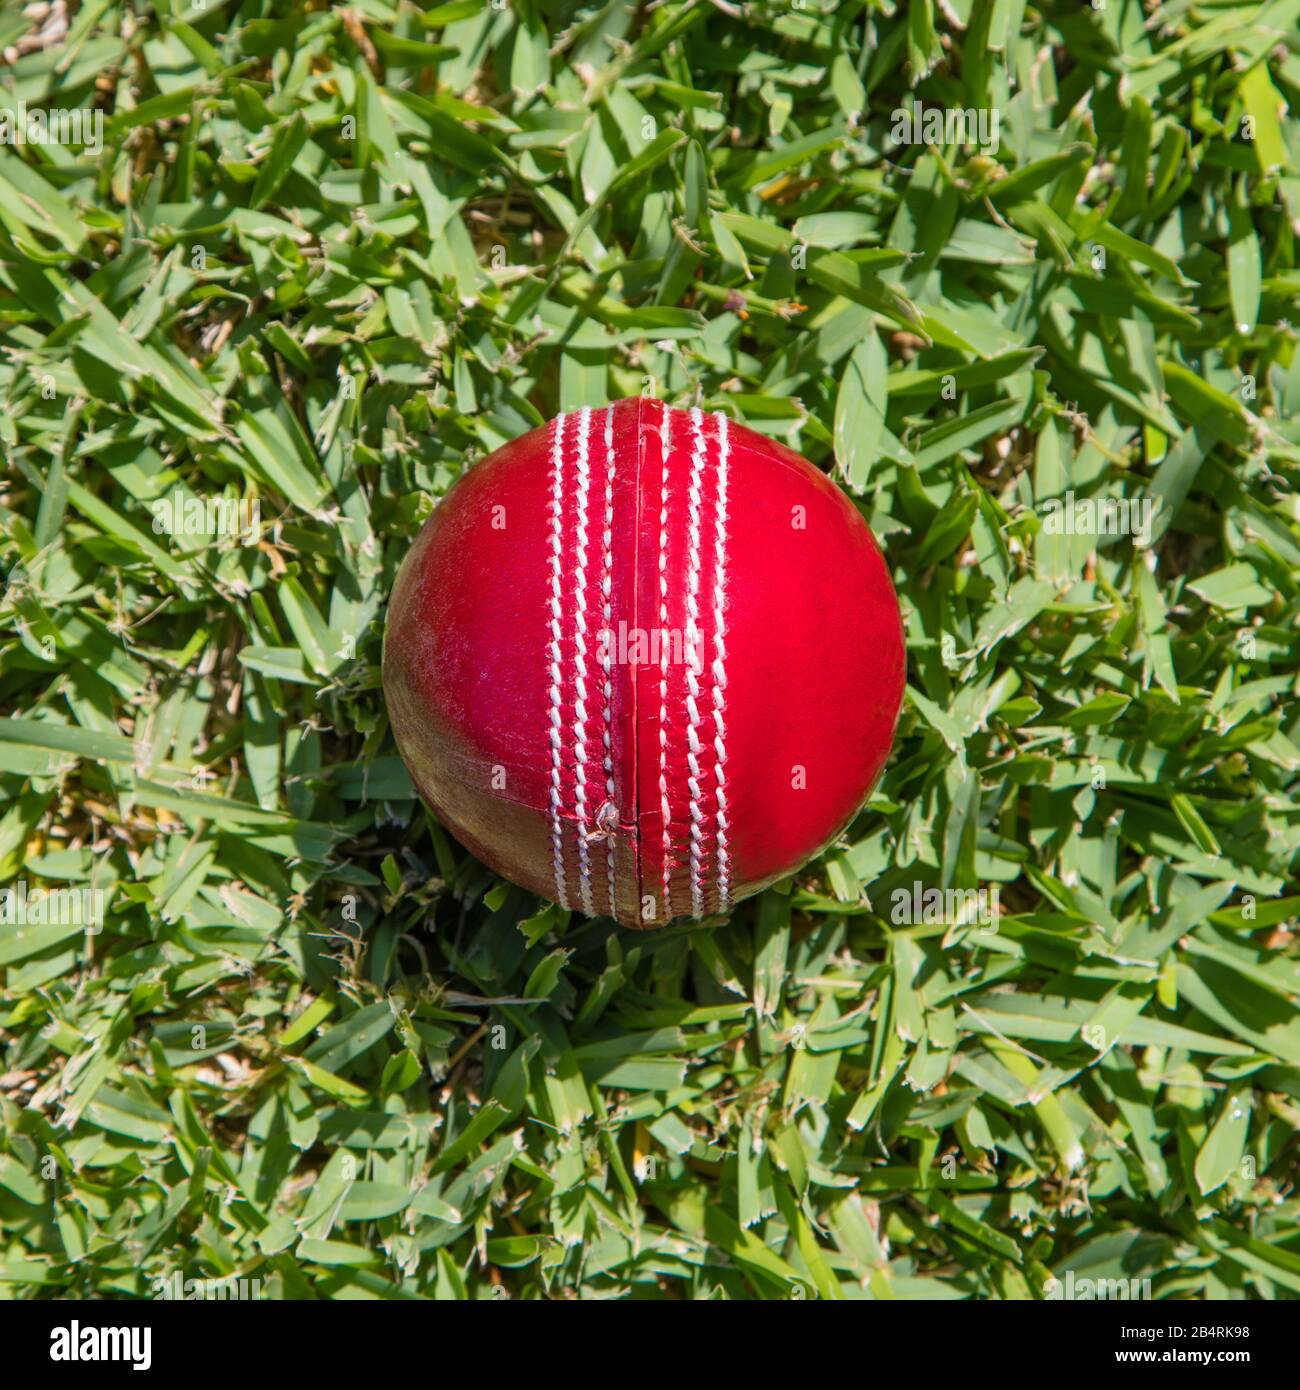 Gros plan du ballon de cricket en cuir rouge sur l'herbe verte. Le cricket est un sport populaire dans des pays comme l'Australie, l'Inde, la Nouvelle-Zélande, l'Angleterre et le Sud-Afrique Banque D'Images